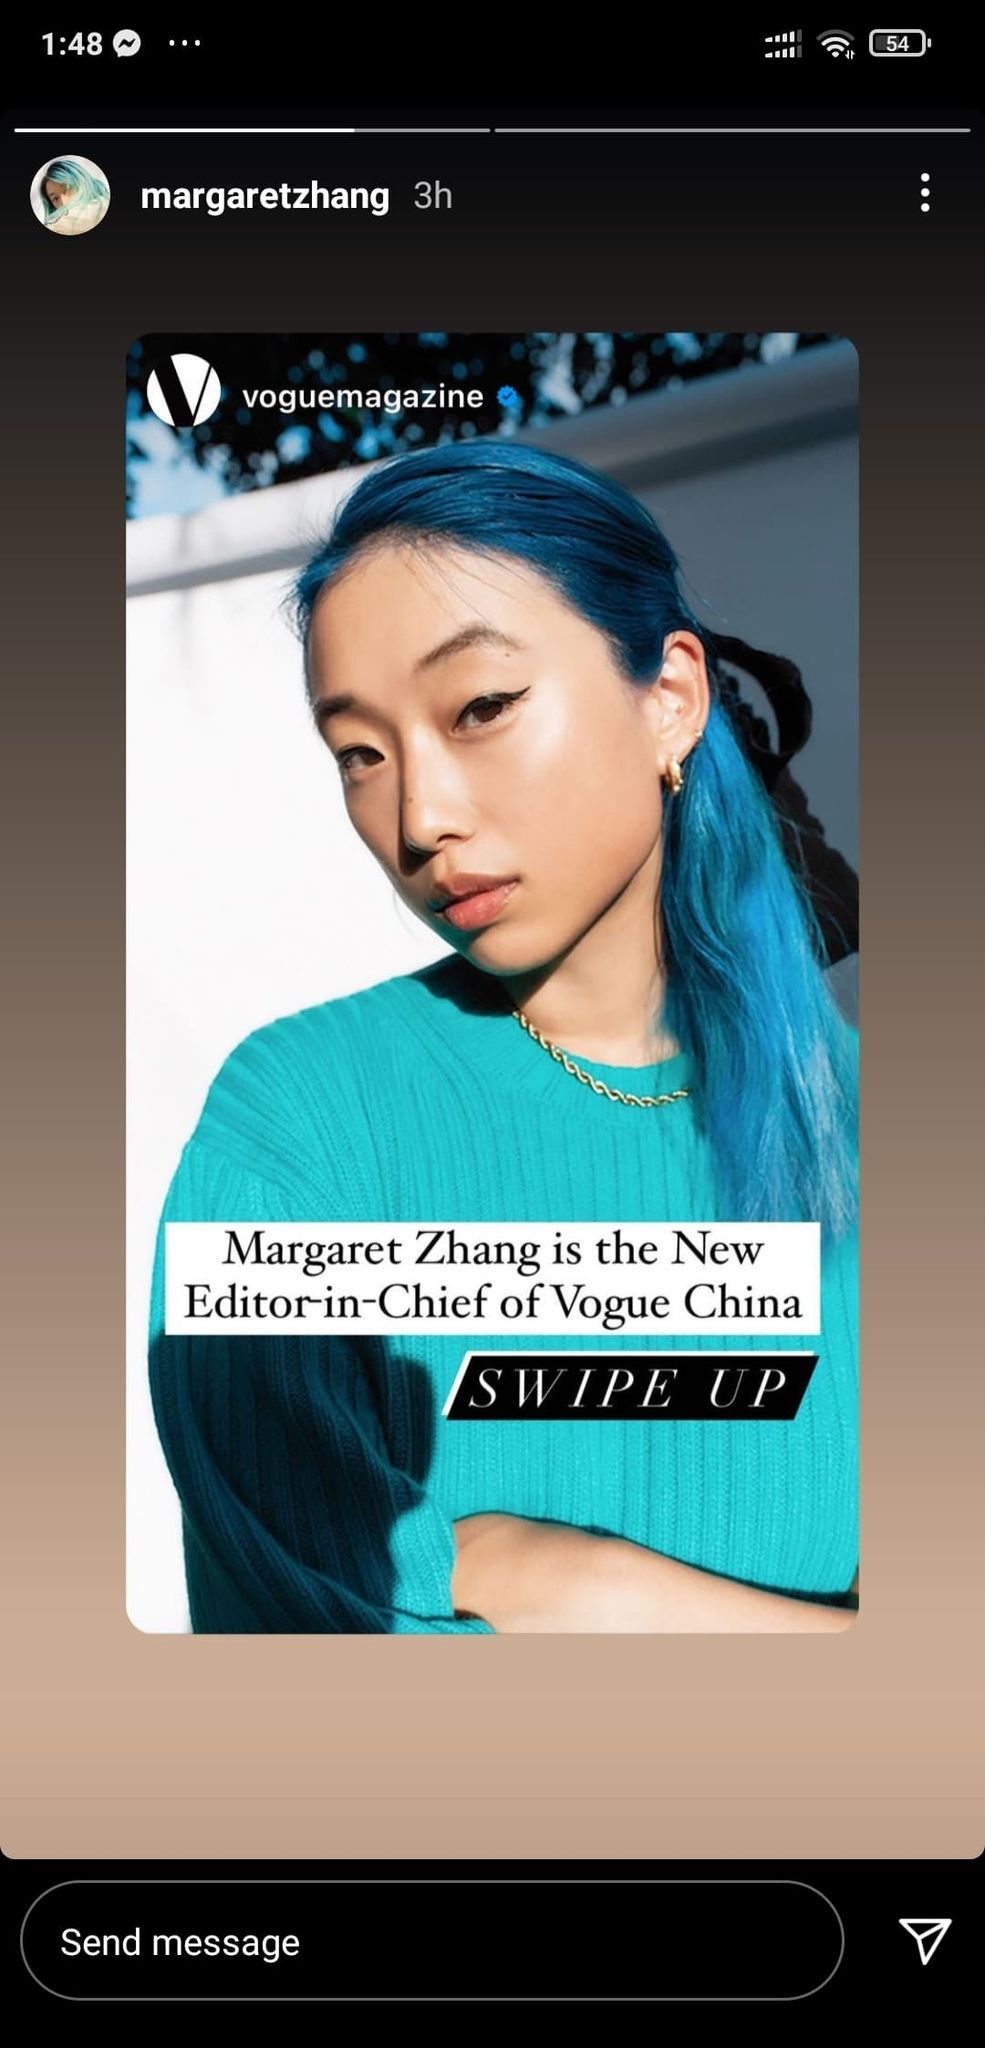 Zhang thì đáp lại bằng một story với thái độ gọi gì thì gọi chứ tôi vẫn là Tổng biên tập Vogue